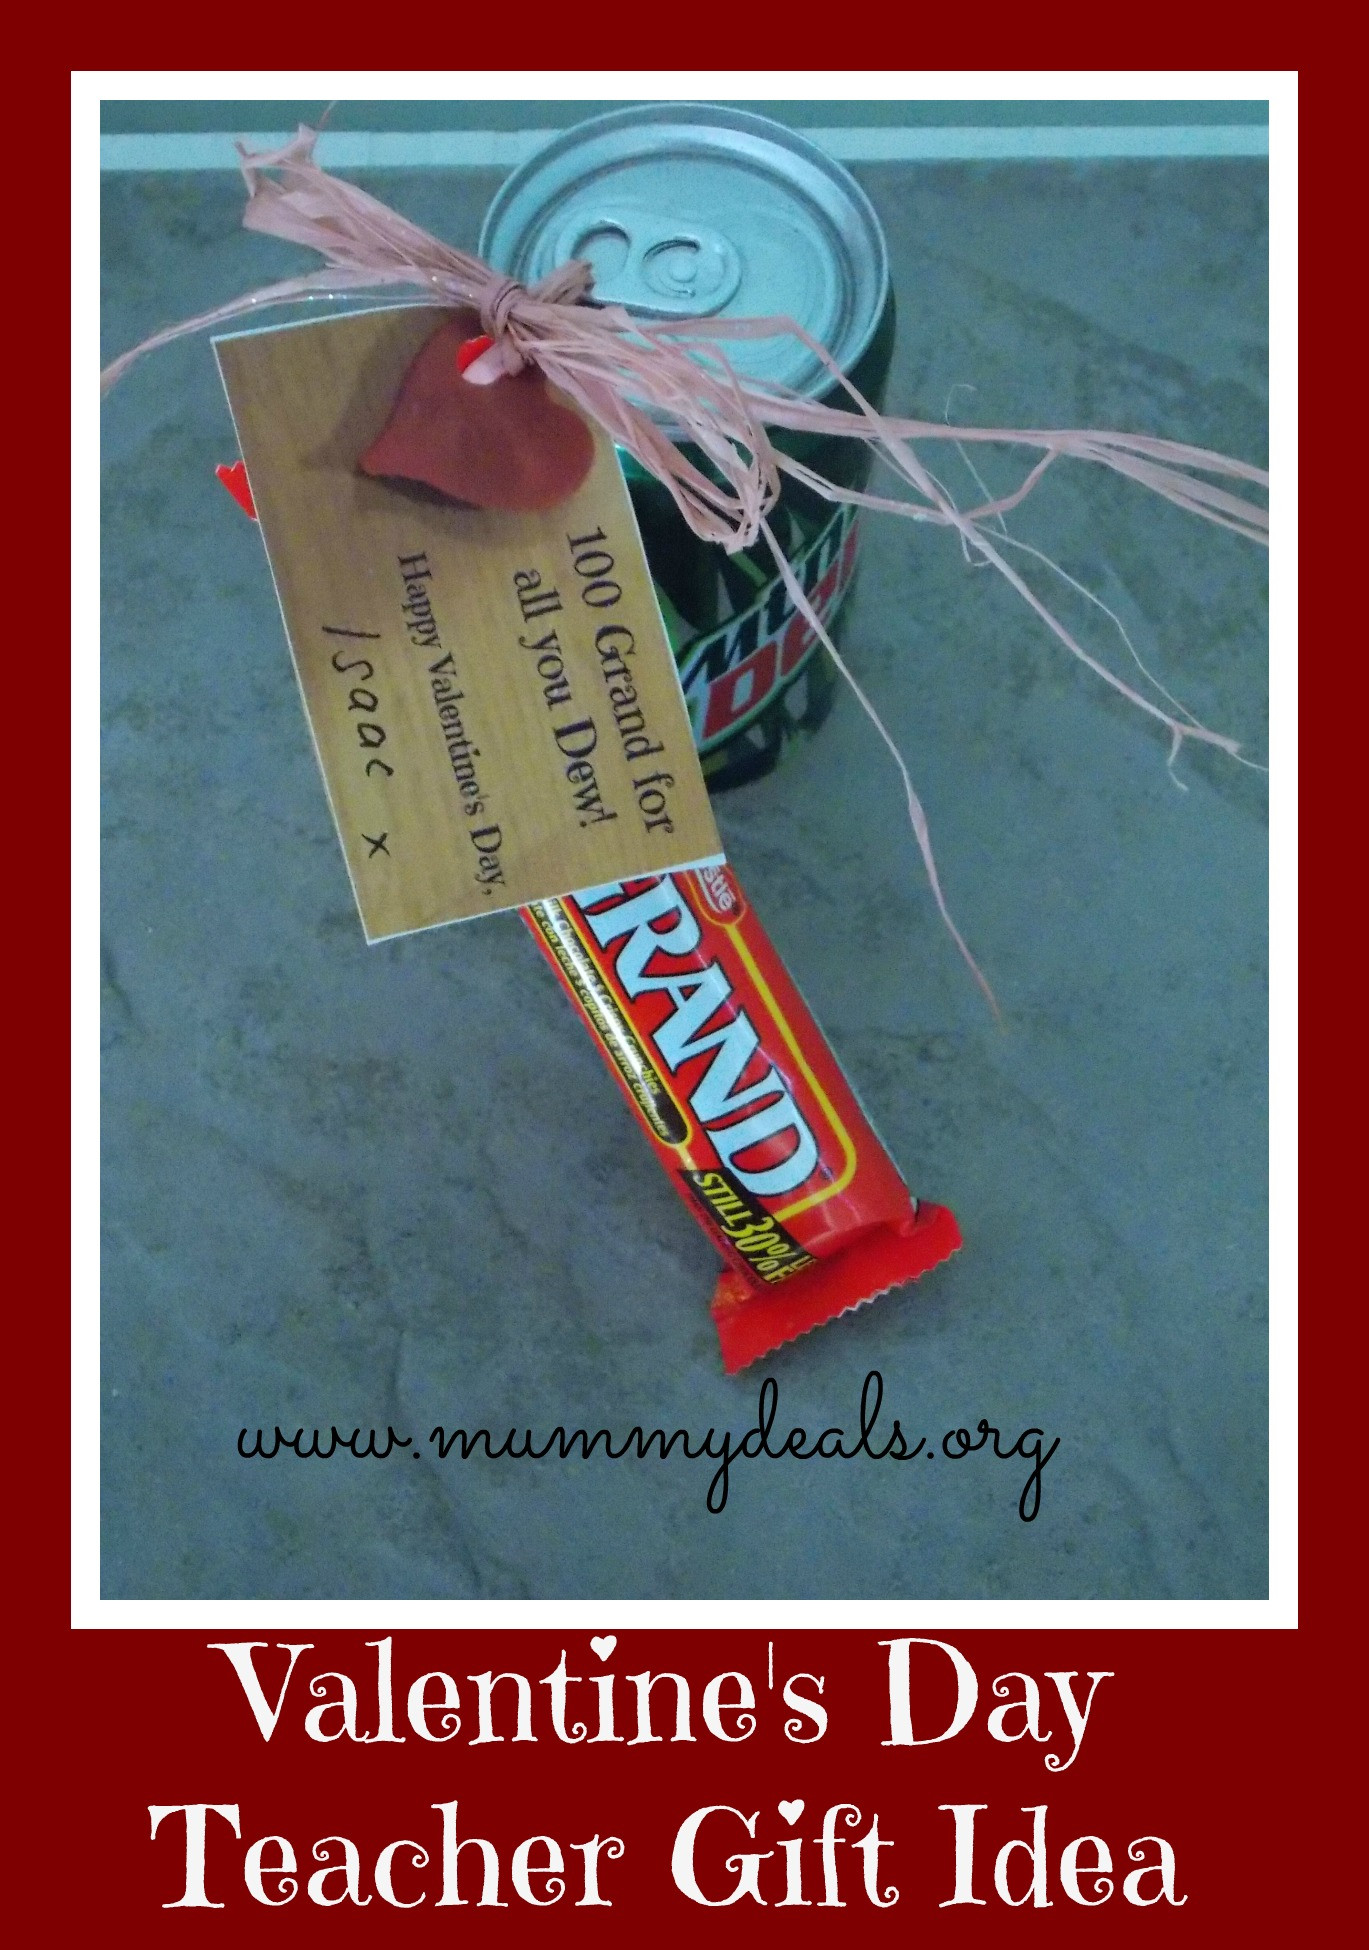 Valentine Gift Ideas For Male Teachers
 6 Valentine s Day Teacher Gift Ideas Mummy Deals